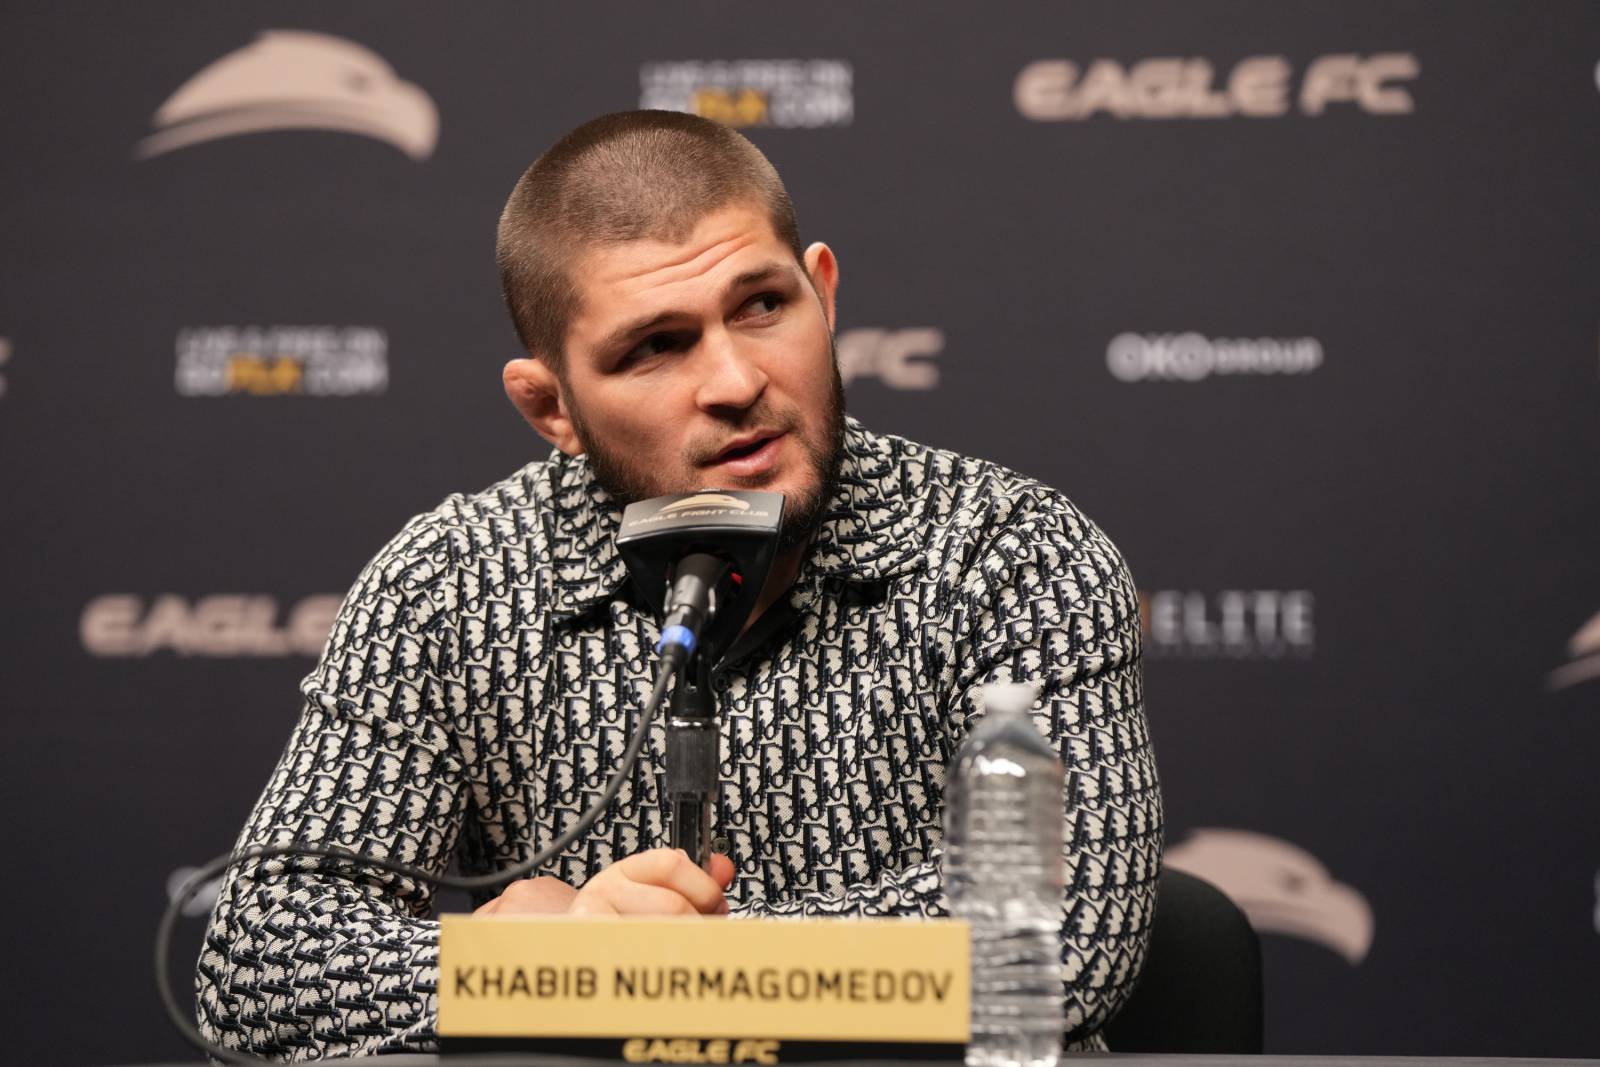 Хабиб Нурмагомедов вошел в зал славы UFC